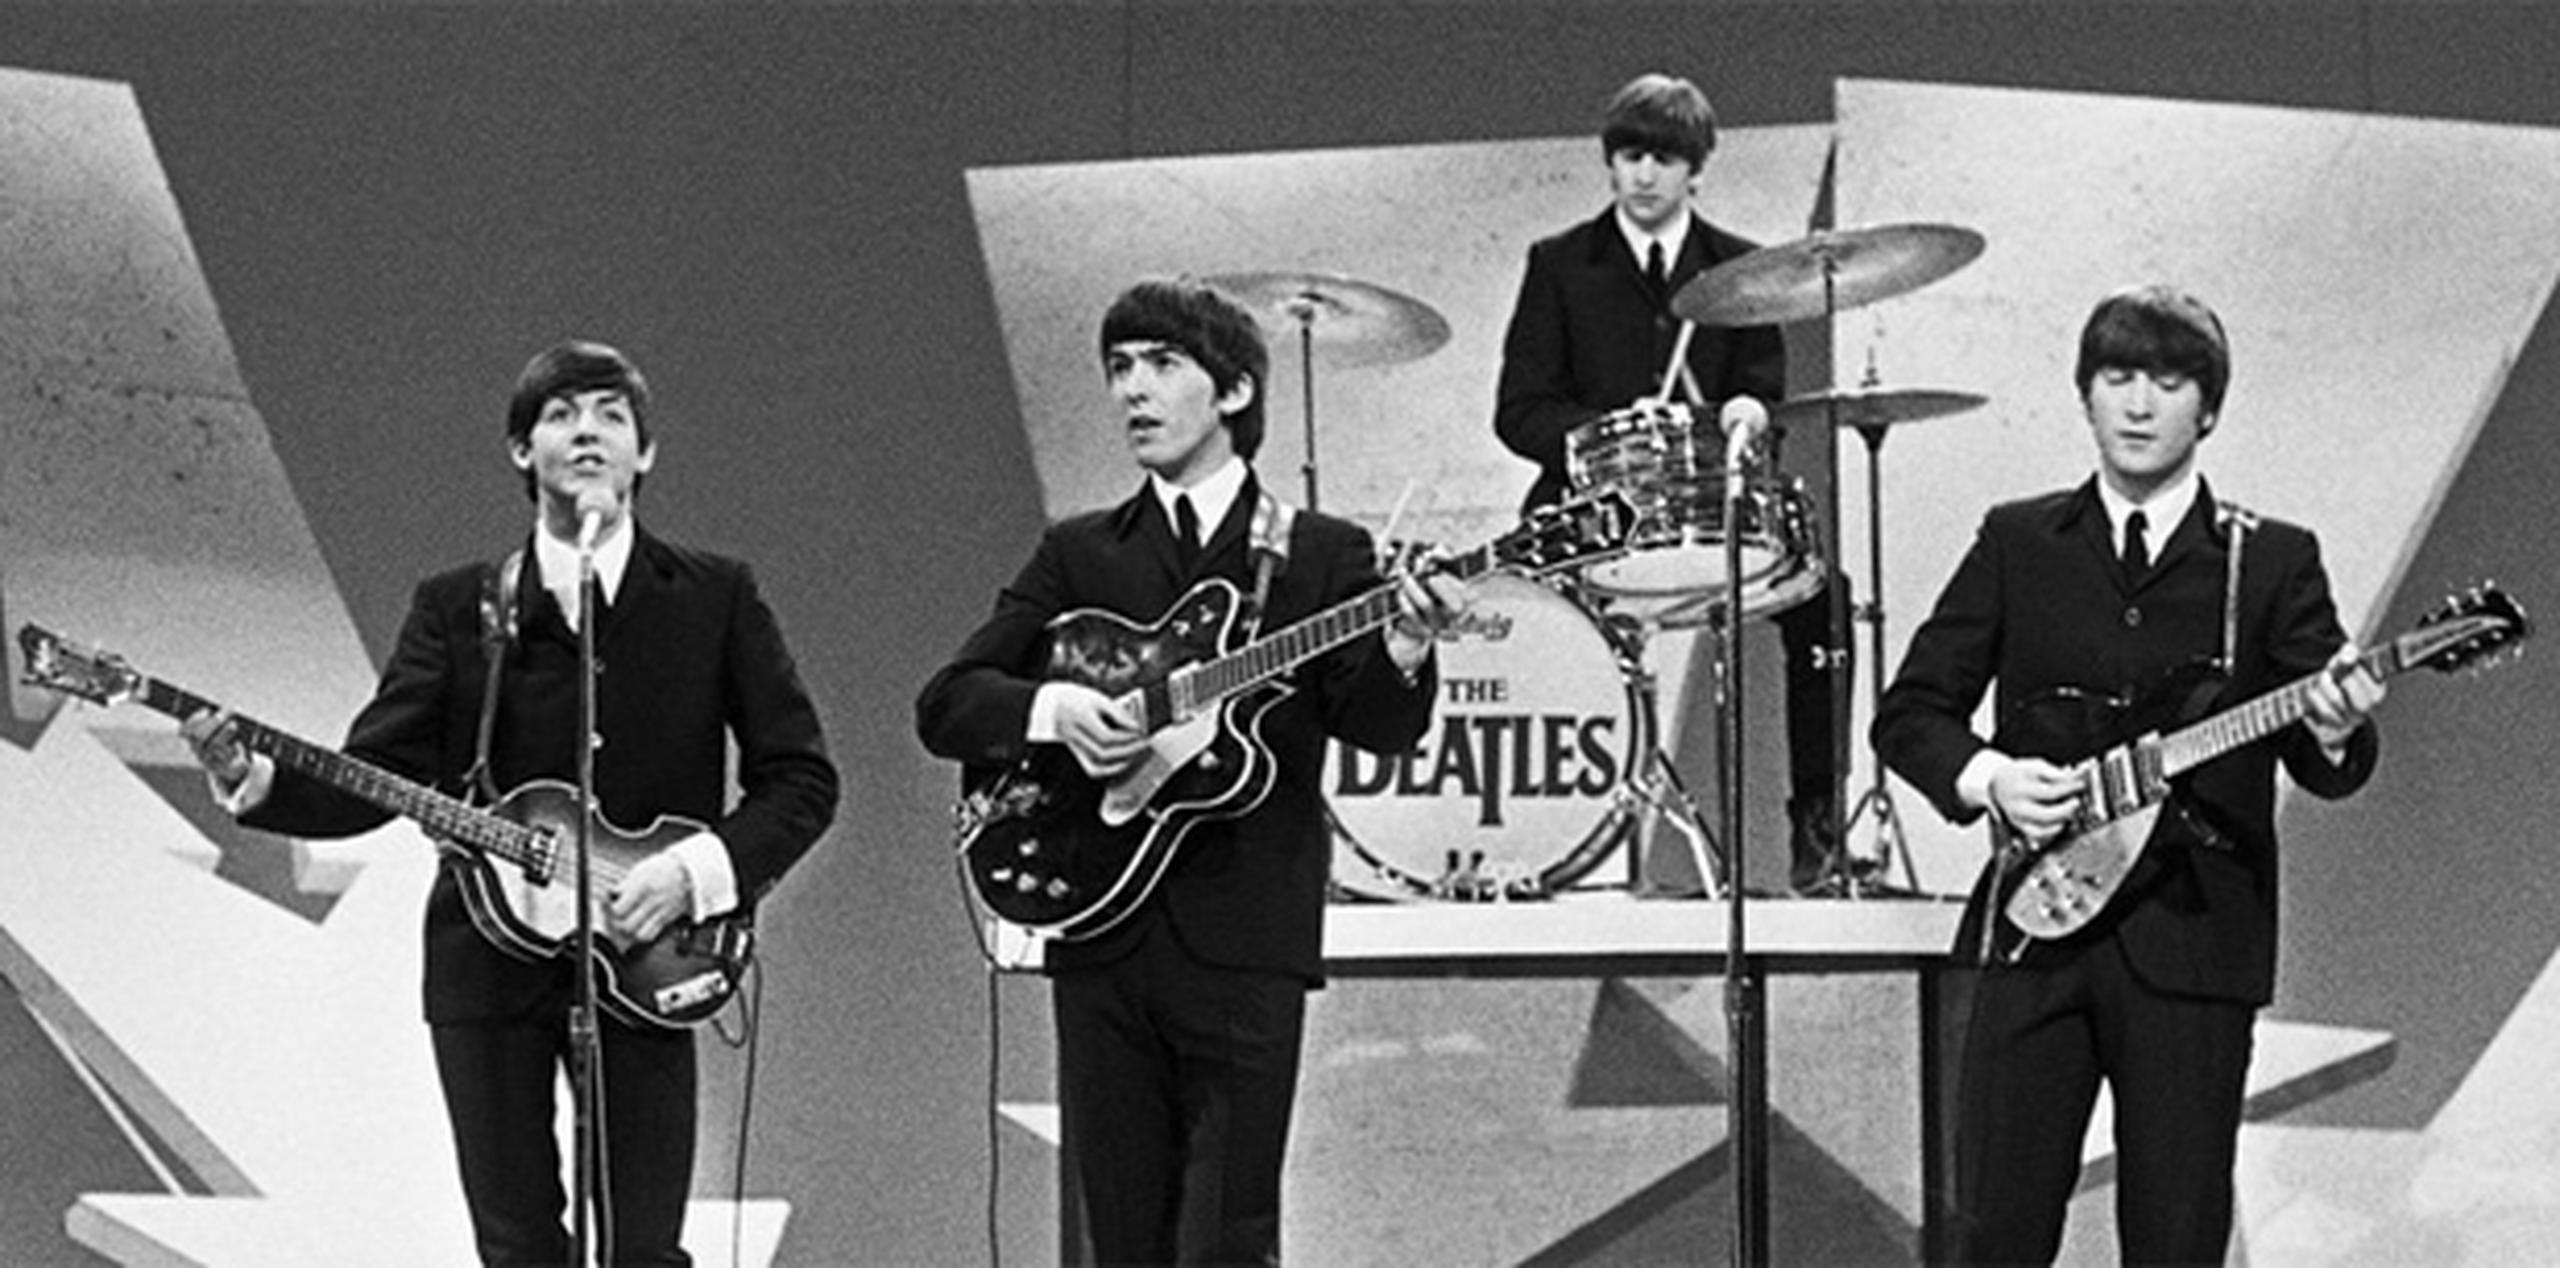 Los Beatles hicieron su debut en "The Ed Sullivan Show", el programa televisivo semanal de variedades más popular de aquel entonces, el domingo 9 de febrero de 1964.